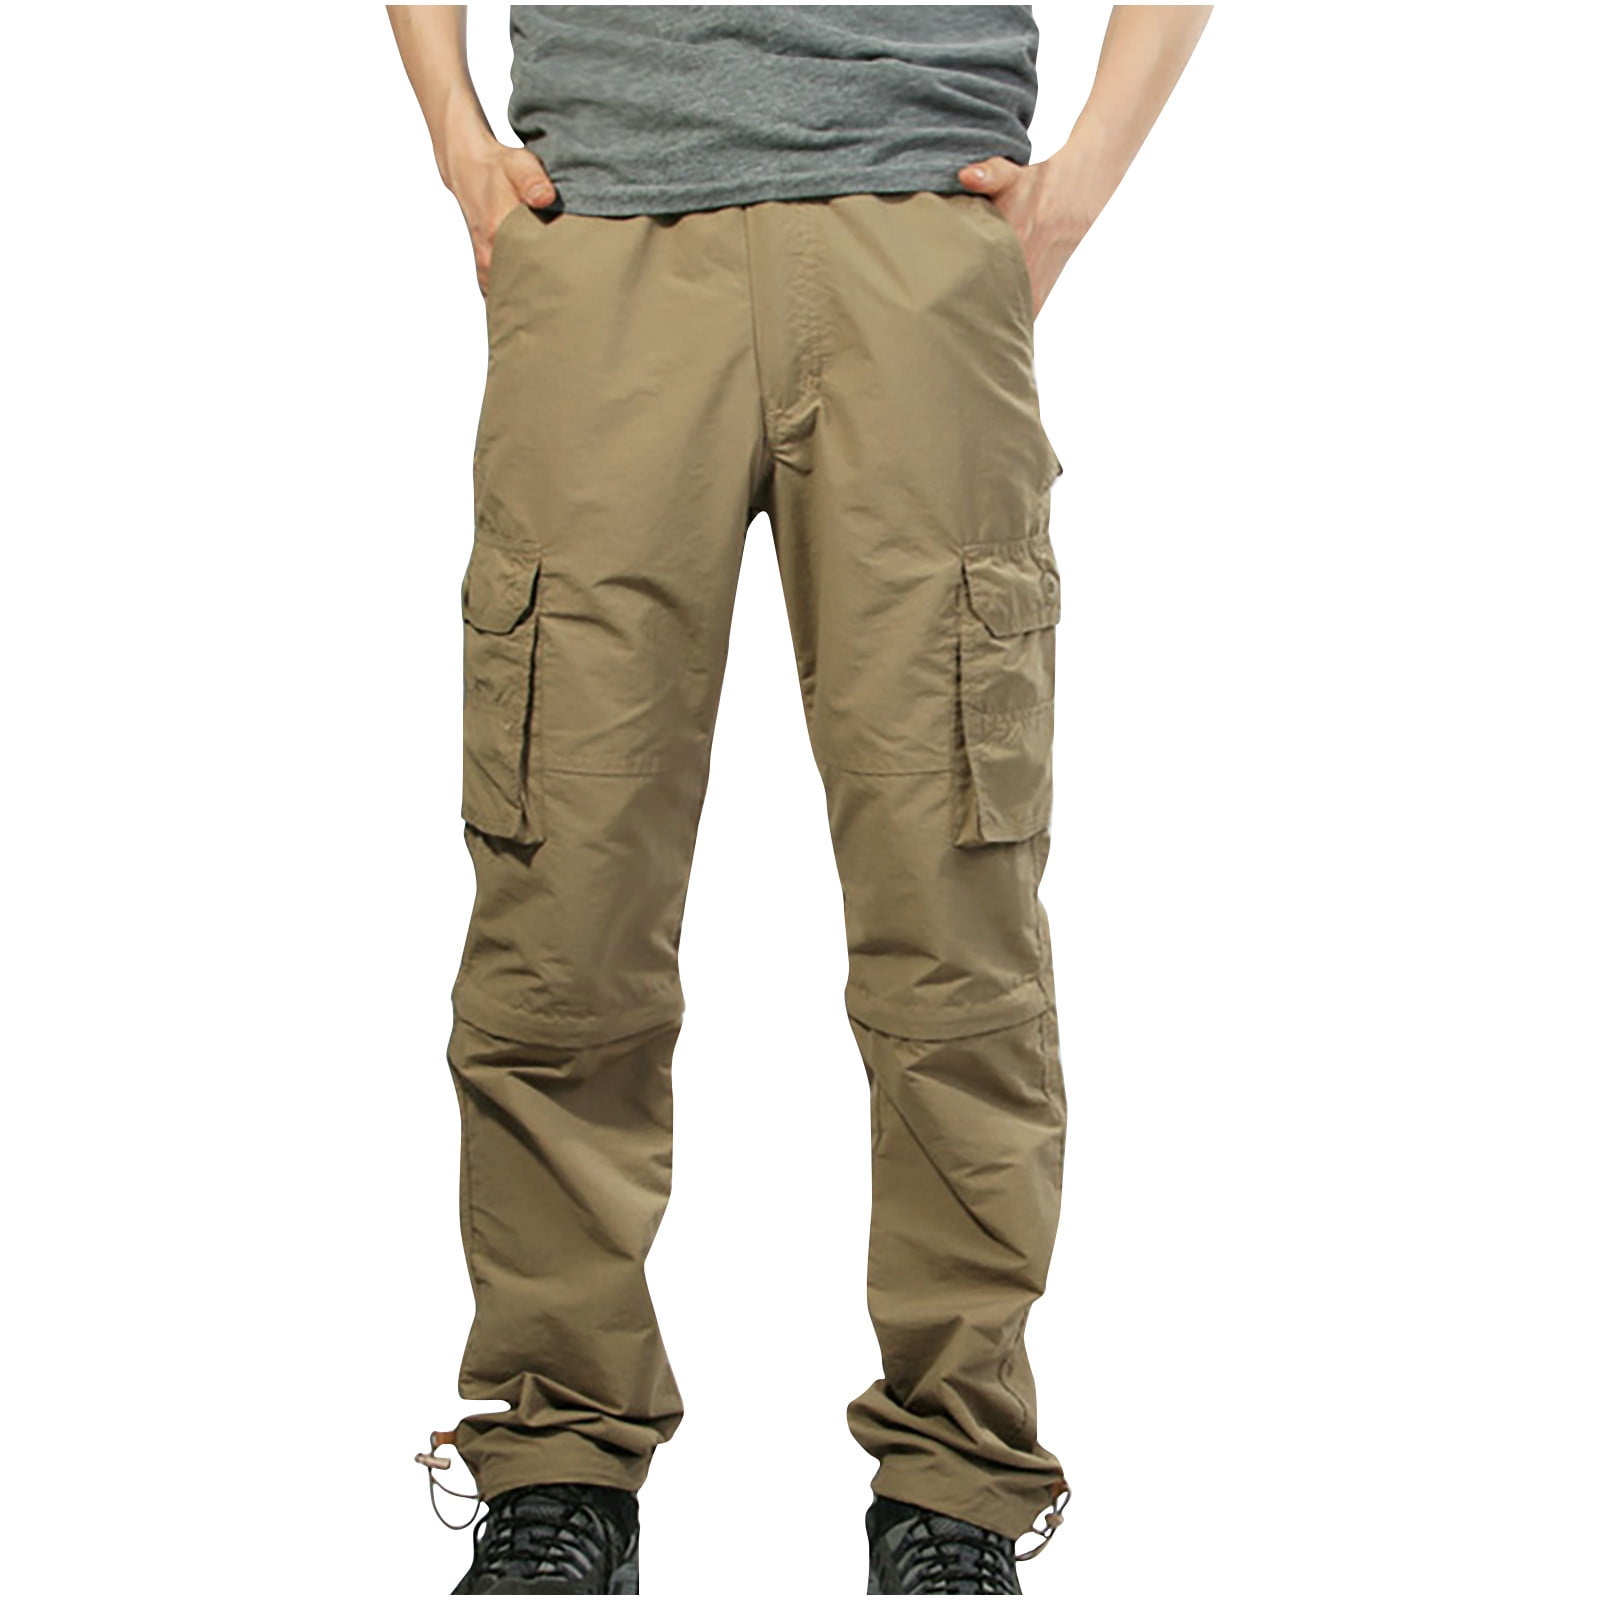 OGLCCG Men's Hiking Cargo Pants Waterproof Quick Dry Lightweight ...